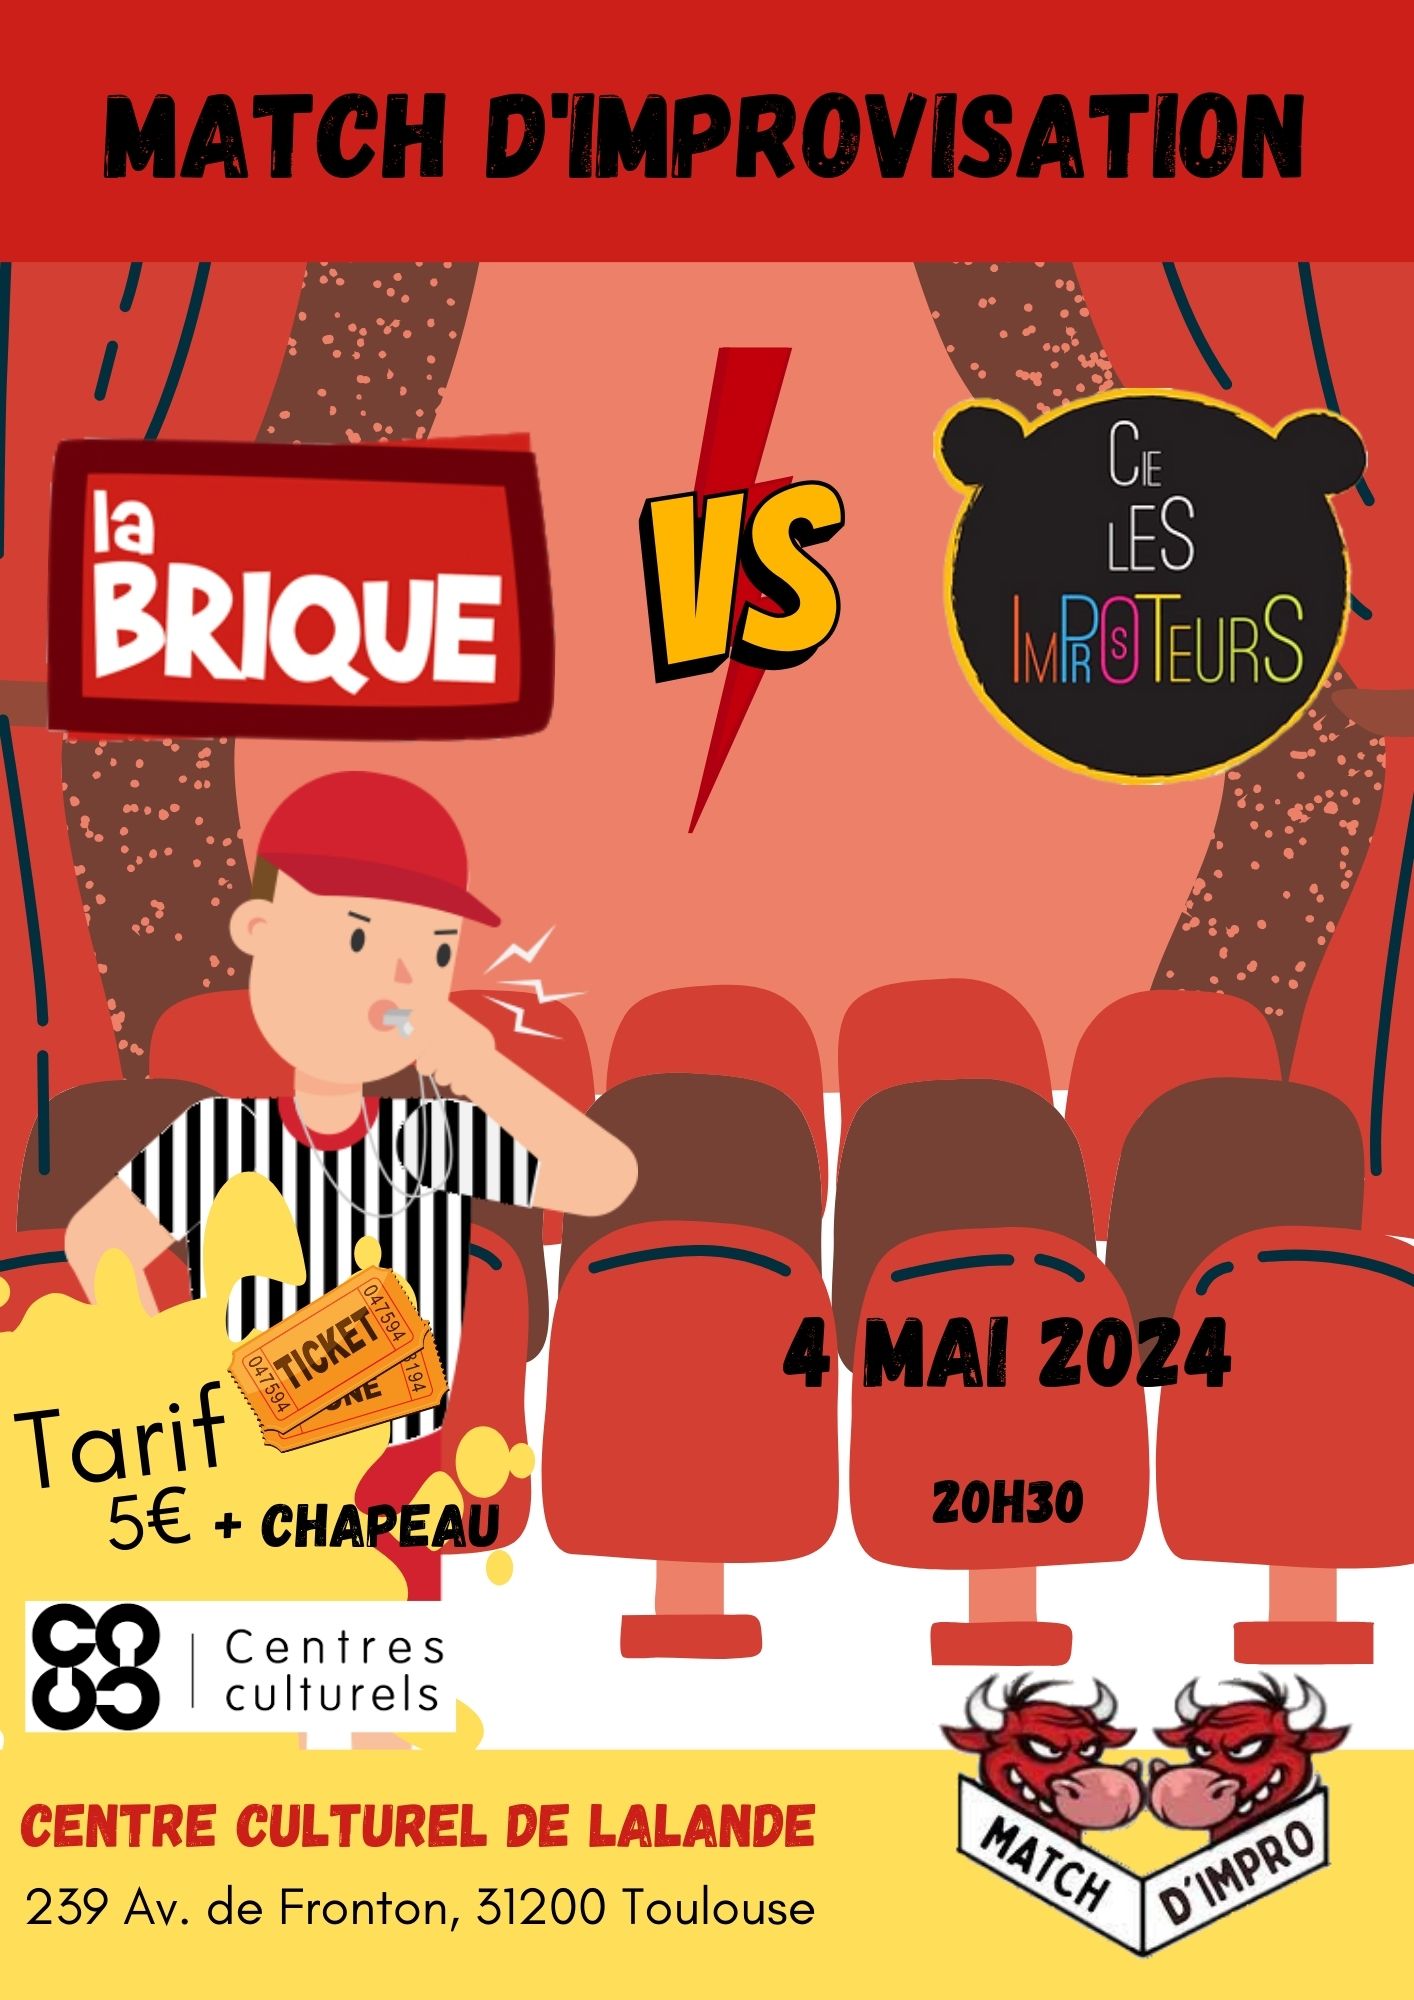 Match d’Impro : Les Tigres des Improsteurs (Tarbes) / La Brique